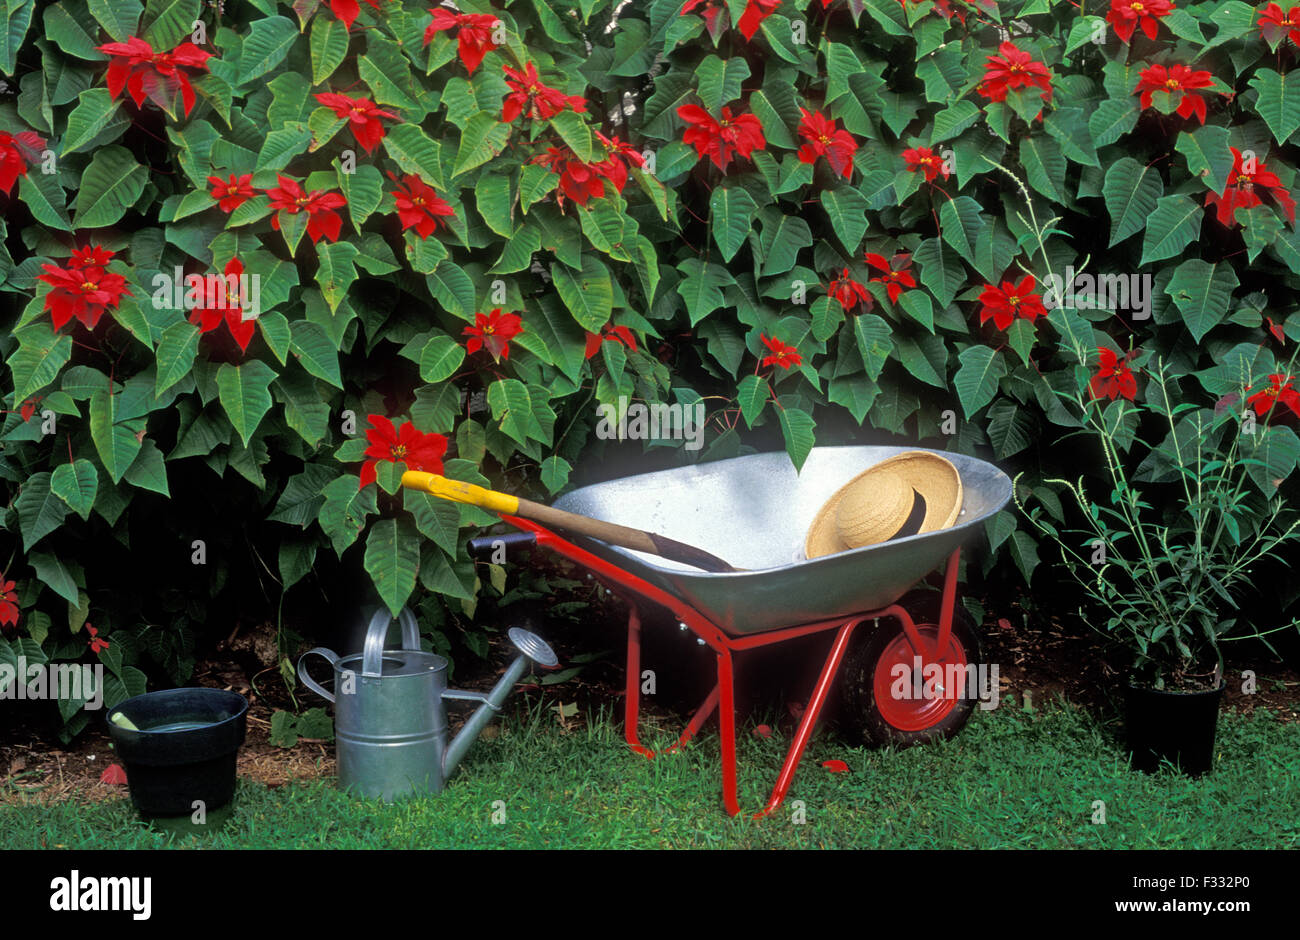 Garden scene (Poinsettia bushes) and garden tools Stock Photo